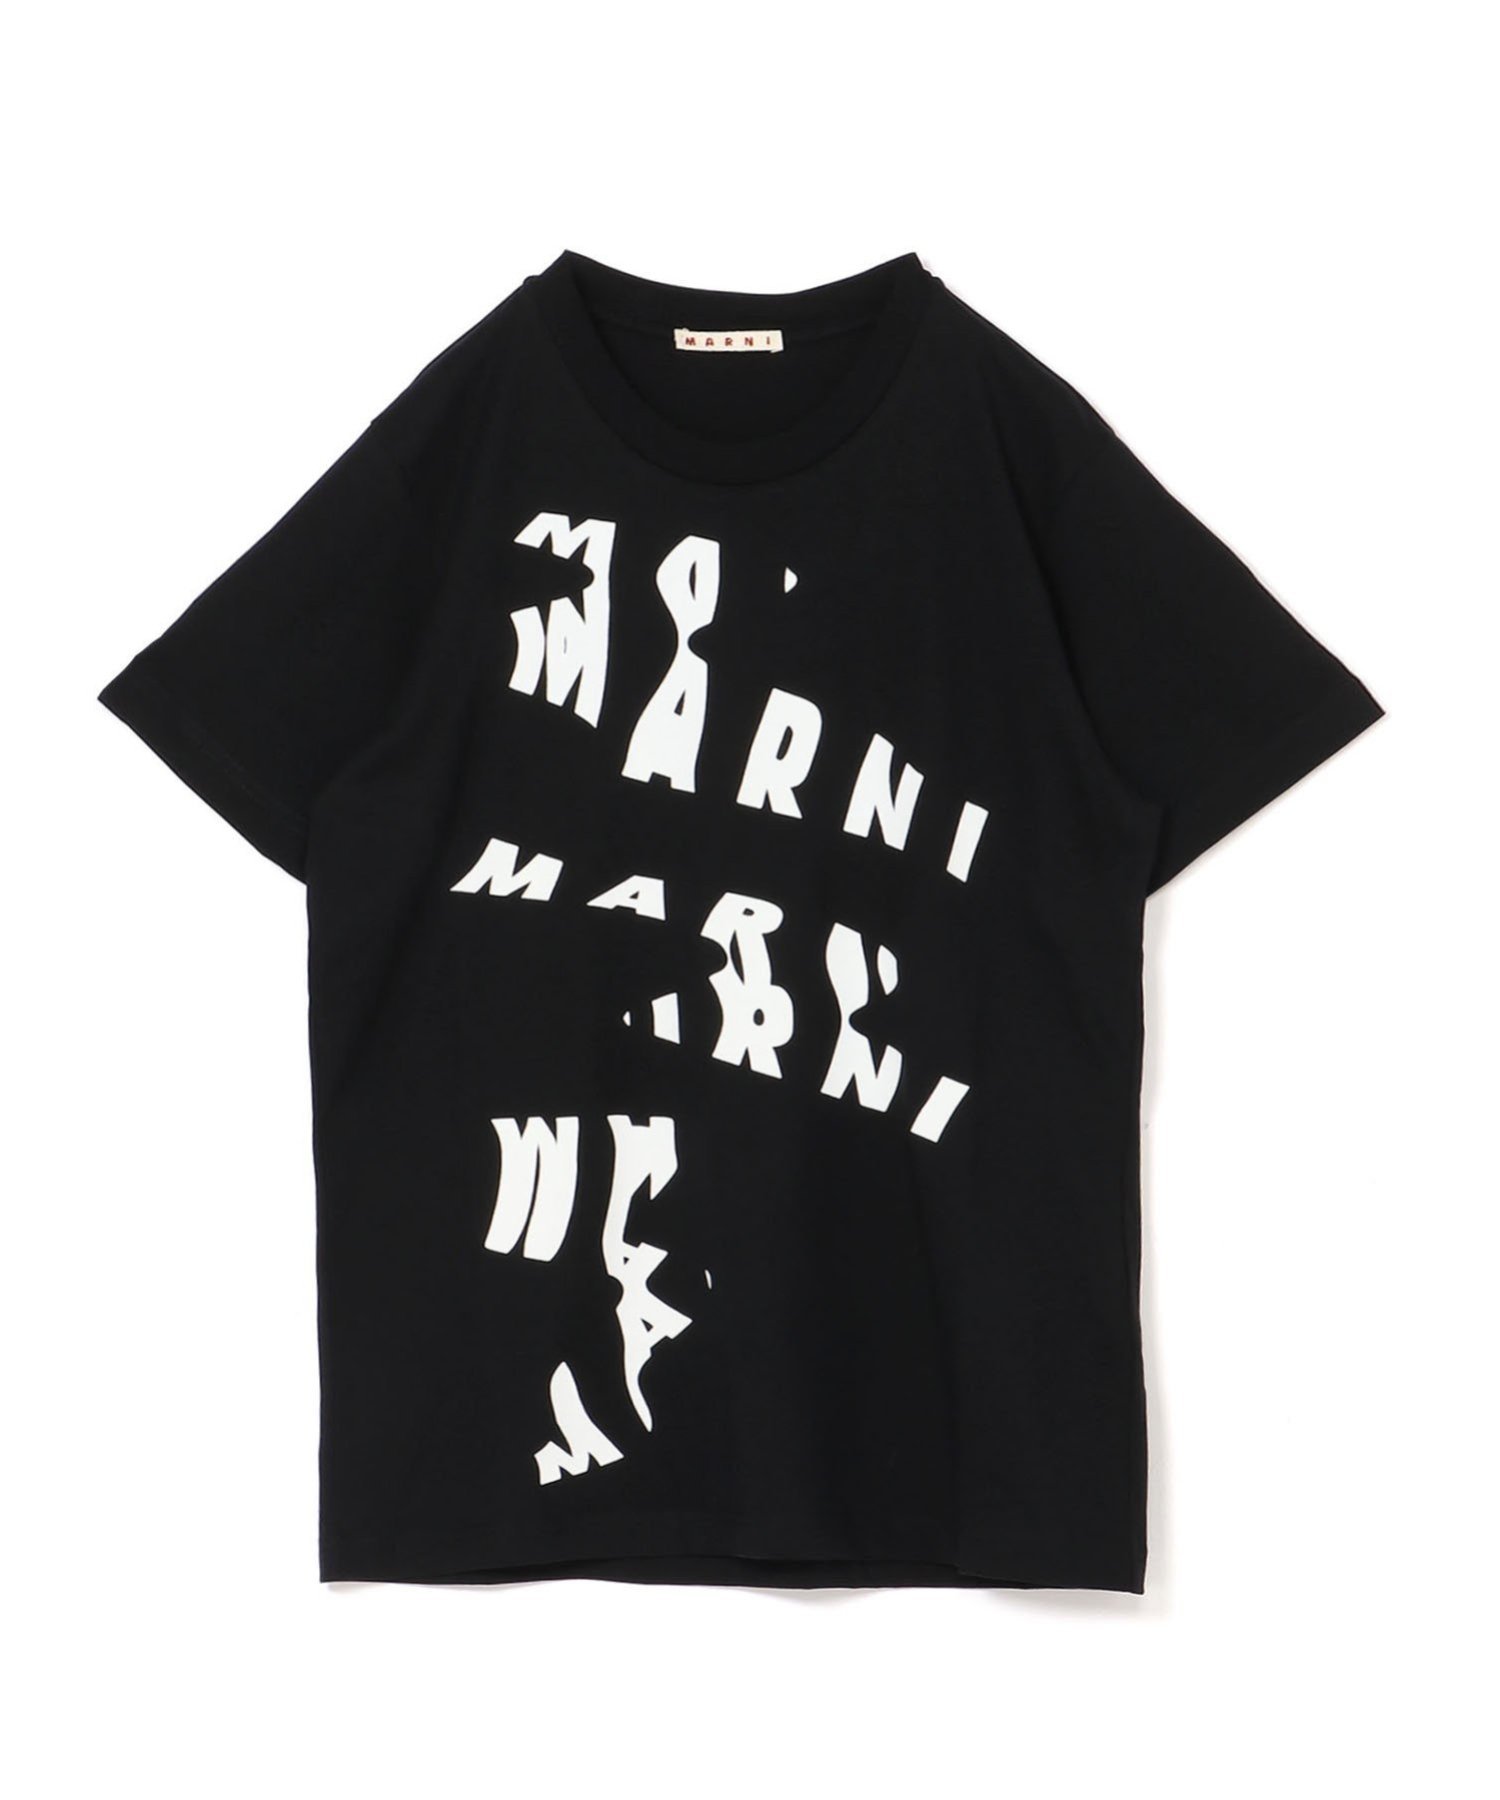 MARNI｜スキャンロゴプリント Tシャツ | Rakuten Fashion(楽天